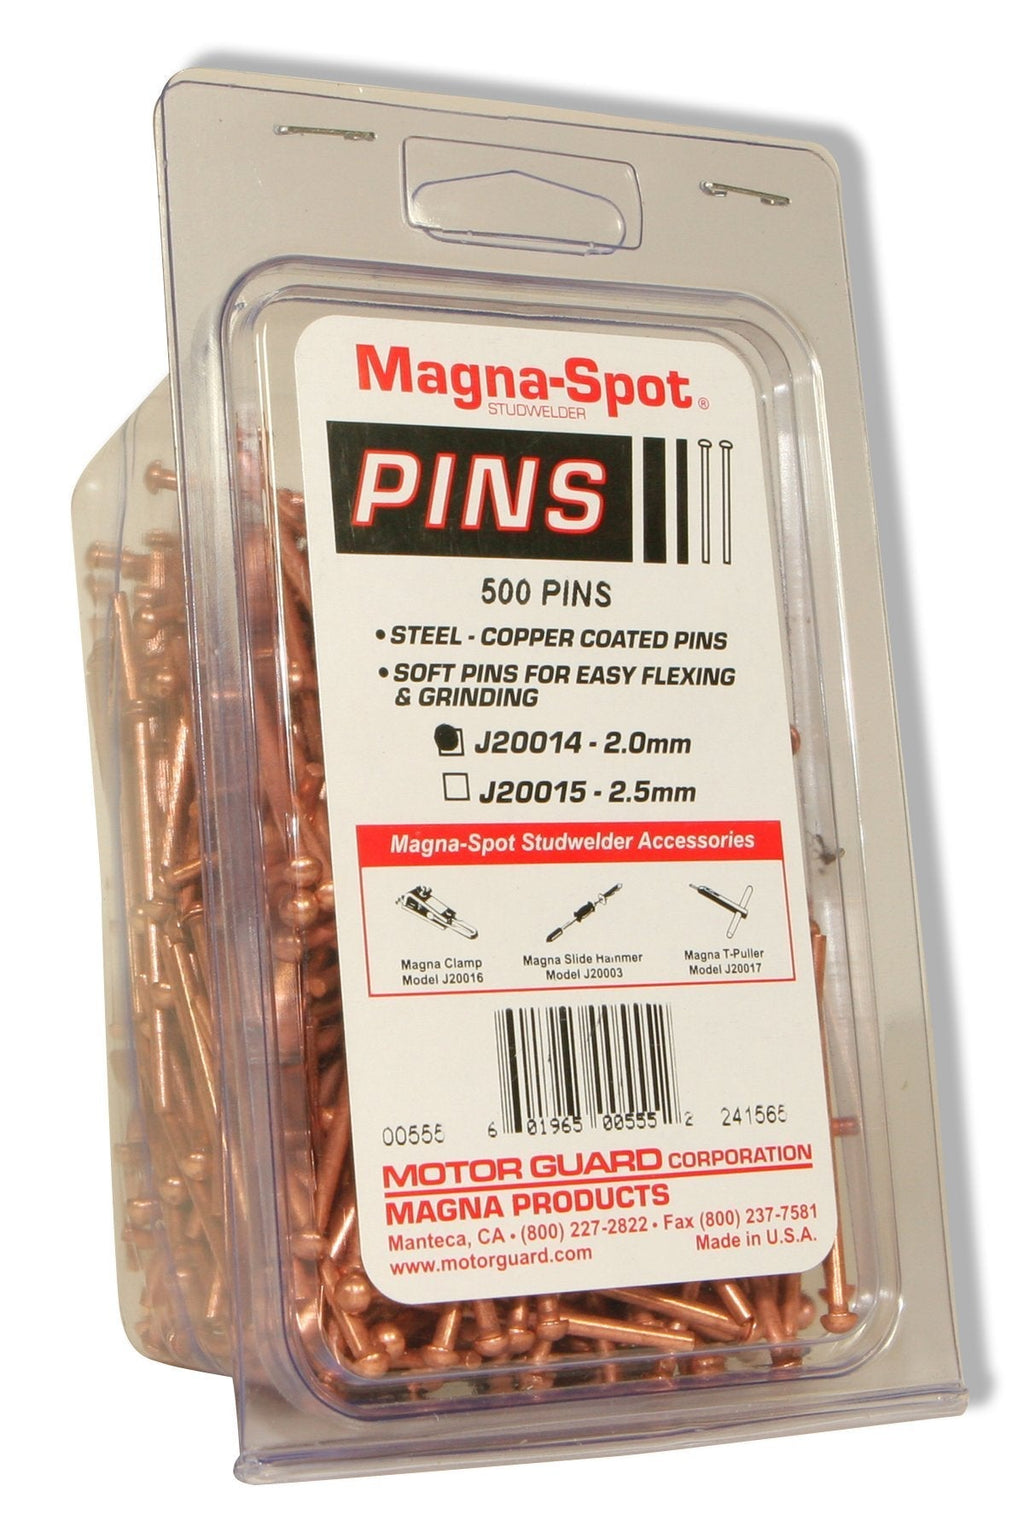  [AUSTRALIA] - Motor Guard J20014 Magna Draw Pins, 2mm, 500-Pack